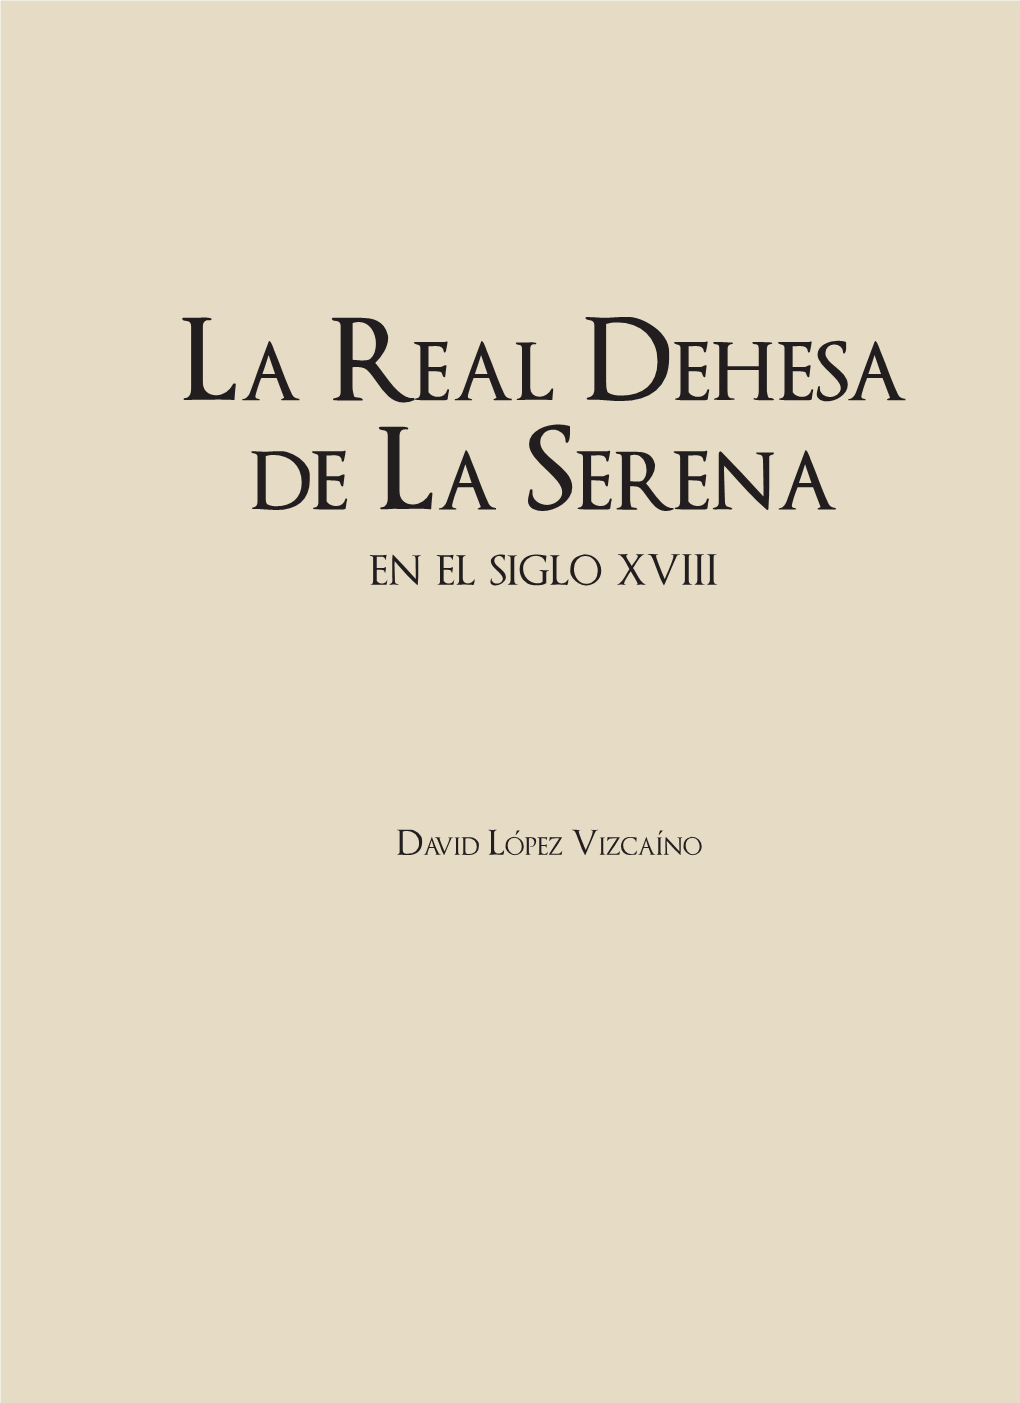 La Real Dehesa De La Serena Fue Repartida Y Enajenada Durante El Siglo XVIII